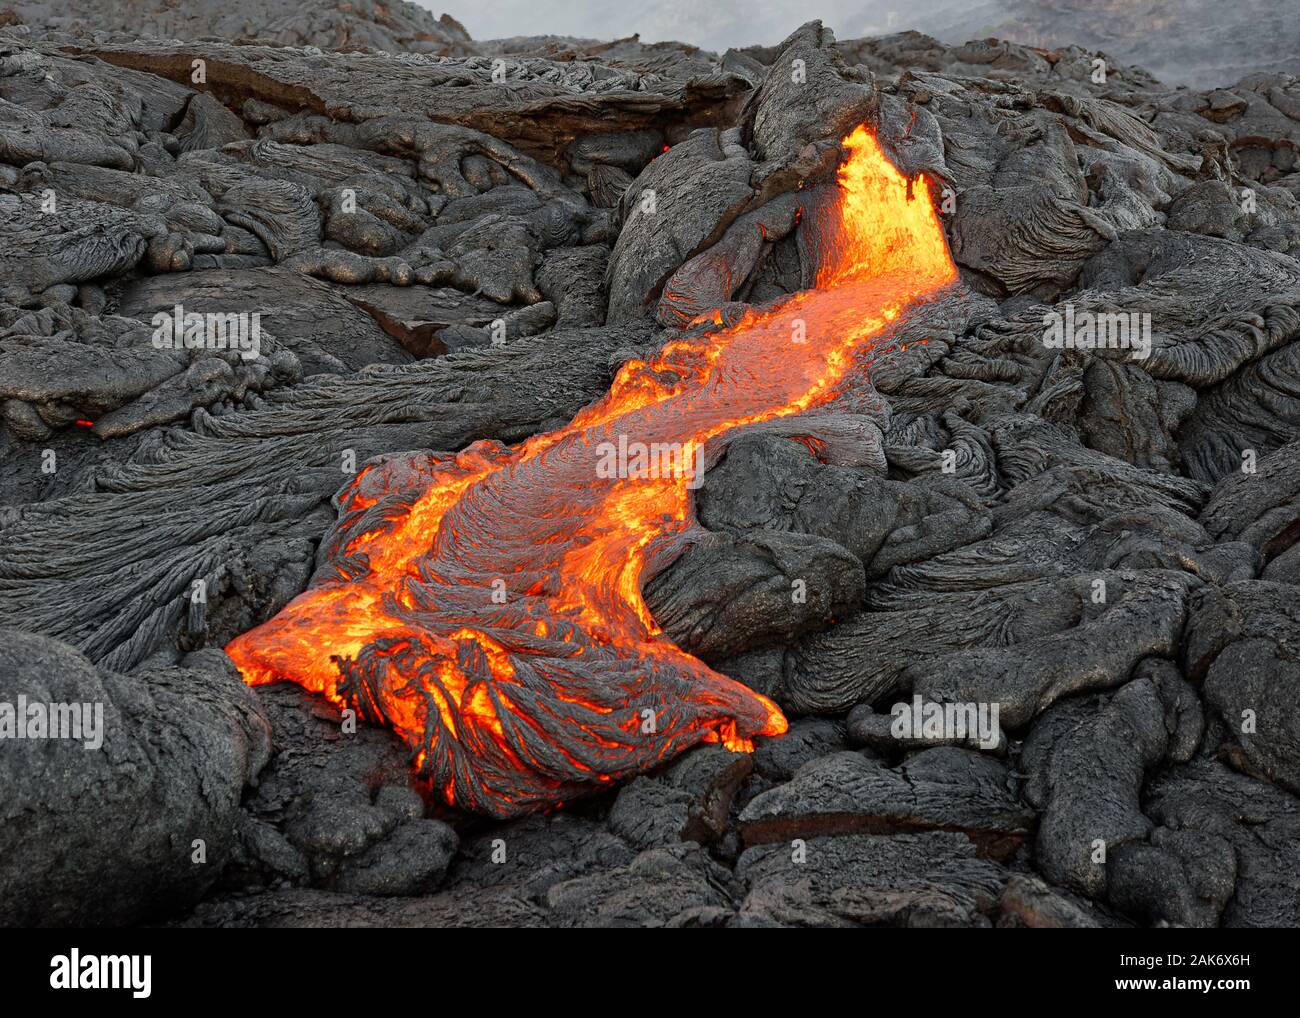 D'un magma chaud active lava flow émerge d'une fissure, la chaleur de la lave incandescente rend l'air vibrer, la lave se refroidit et se solidifie lentement Banque D'Images